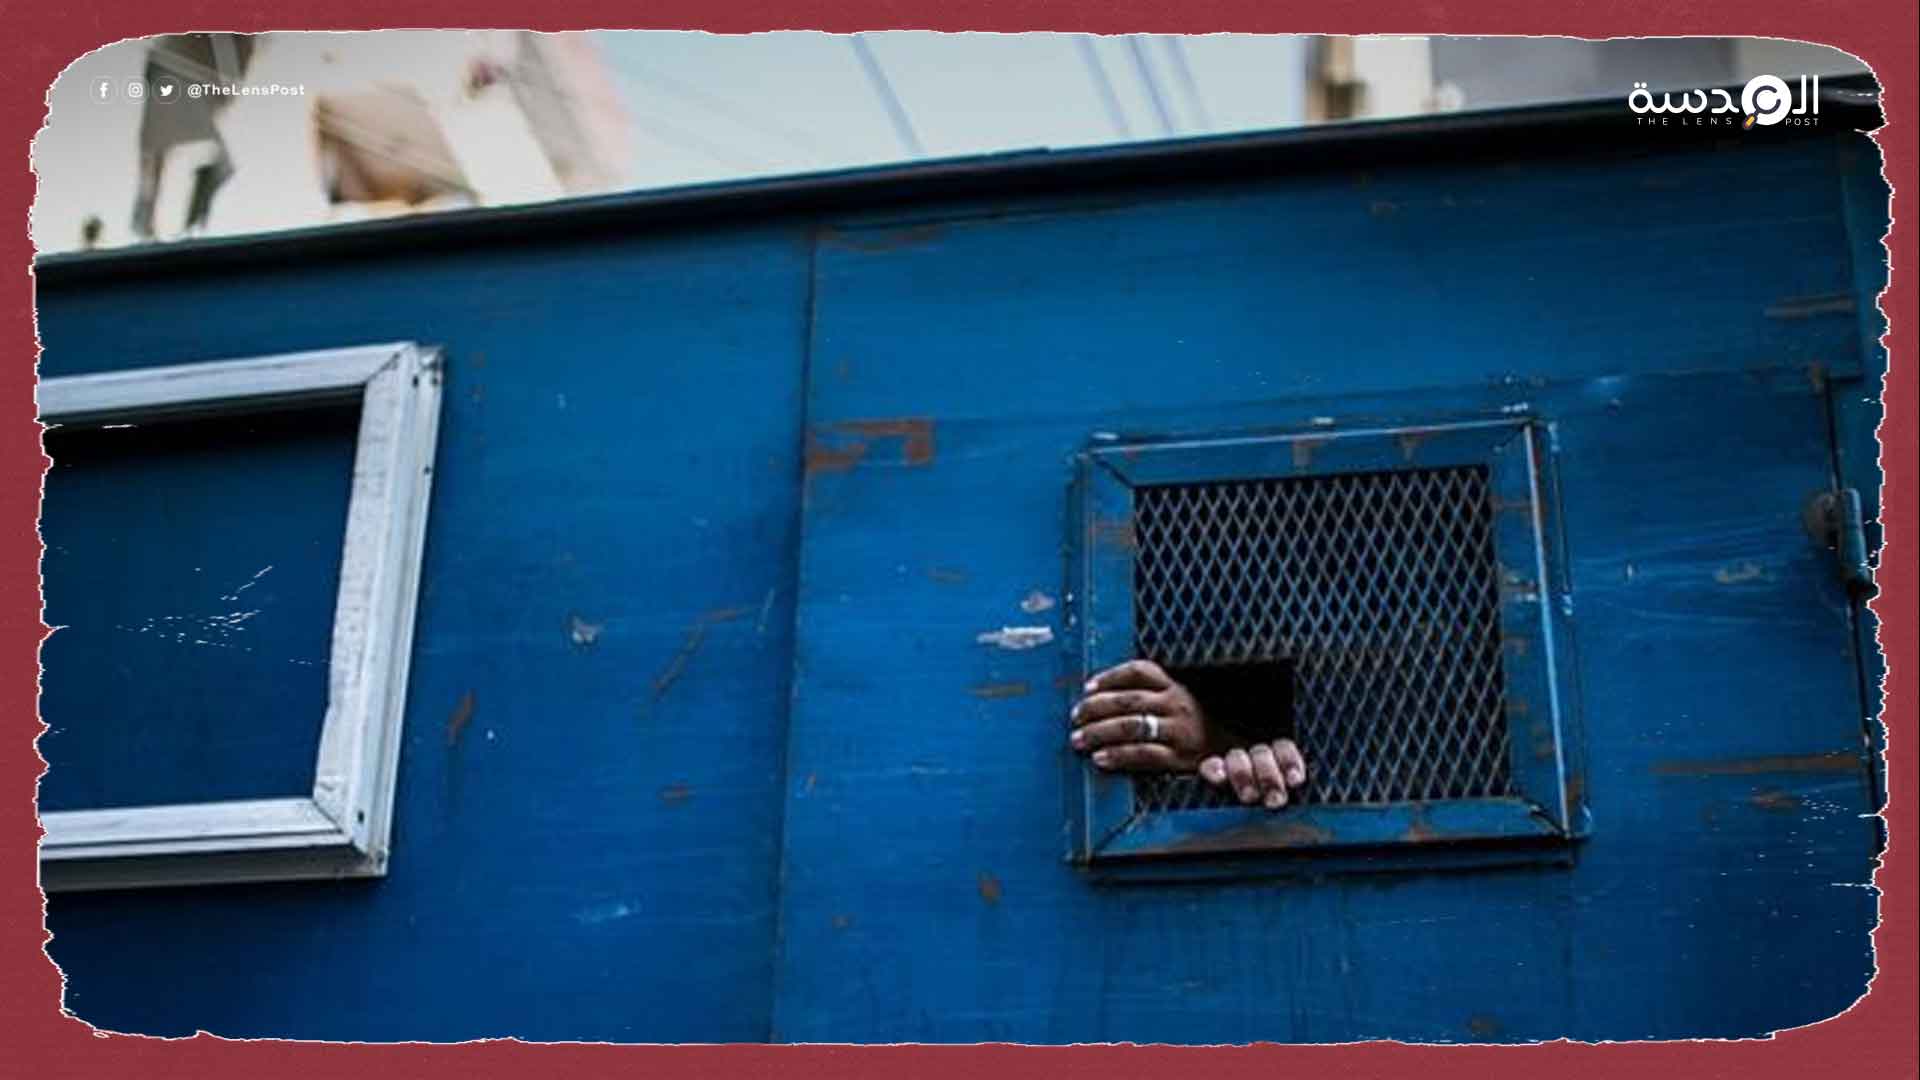 وفاة 45 معتقل بالسجون المصرية ومزيد من الإعدامات بعد إطلاق السيسي استراتيجية حقوق الإنسان